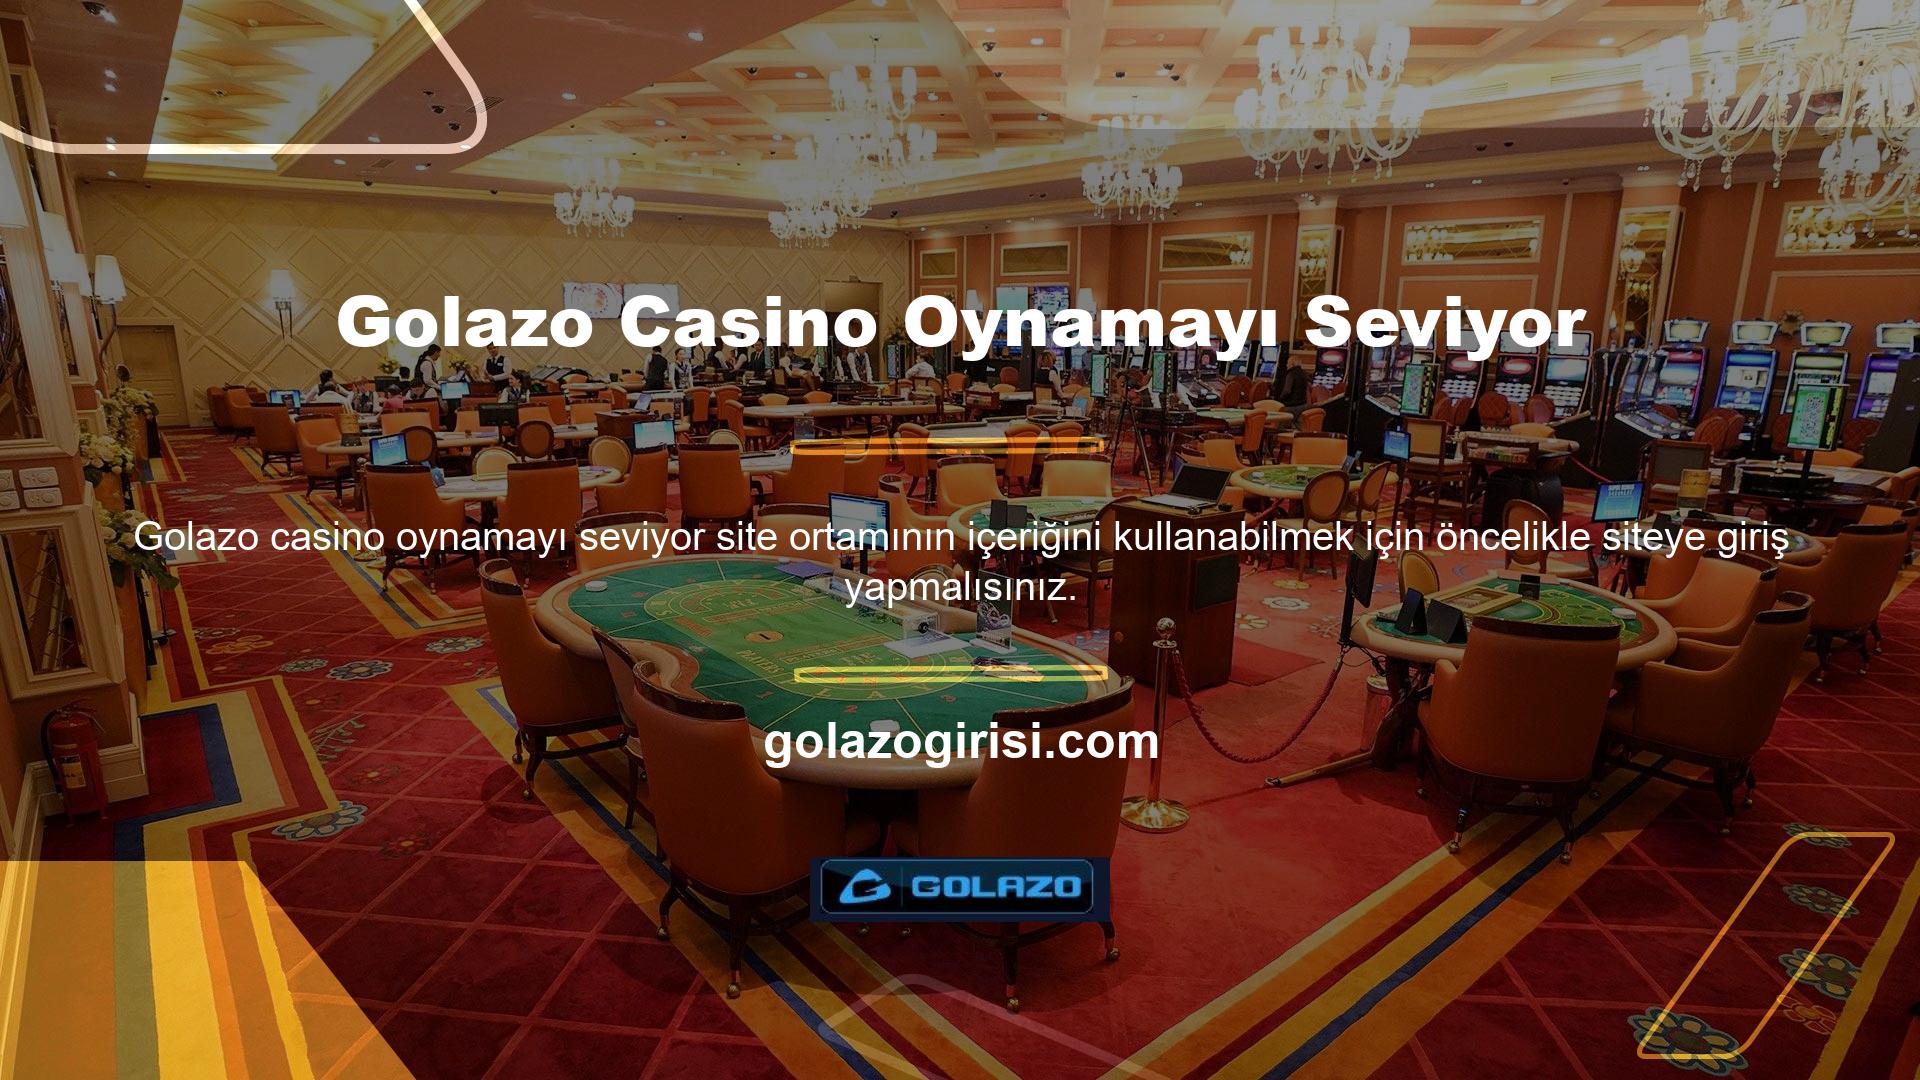 Bir casino web sitesini ziyaret ettiğinizde canlı casino içeriğine kolayca ulaşabilirsiniz